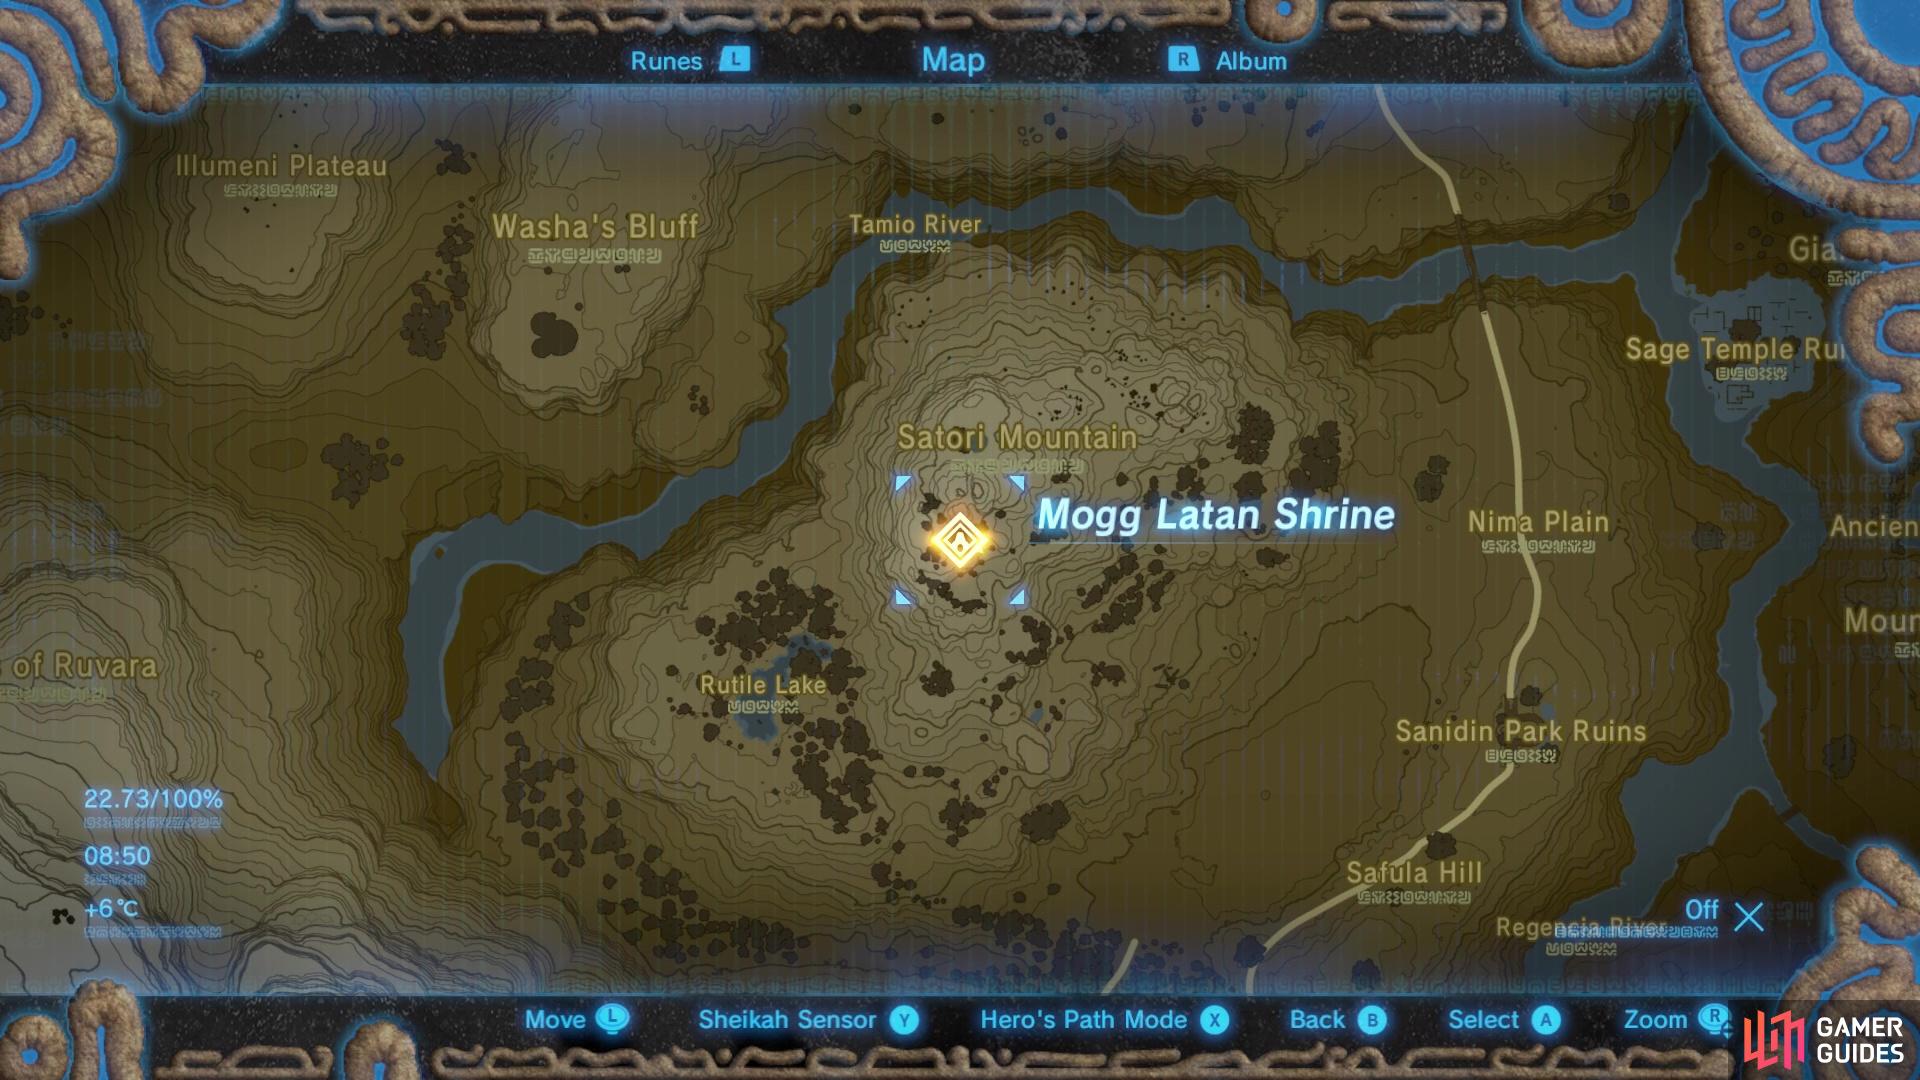 Mogg Latan Shrine is found on Satori Mountain